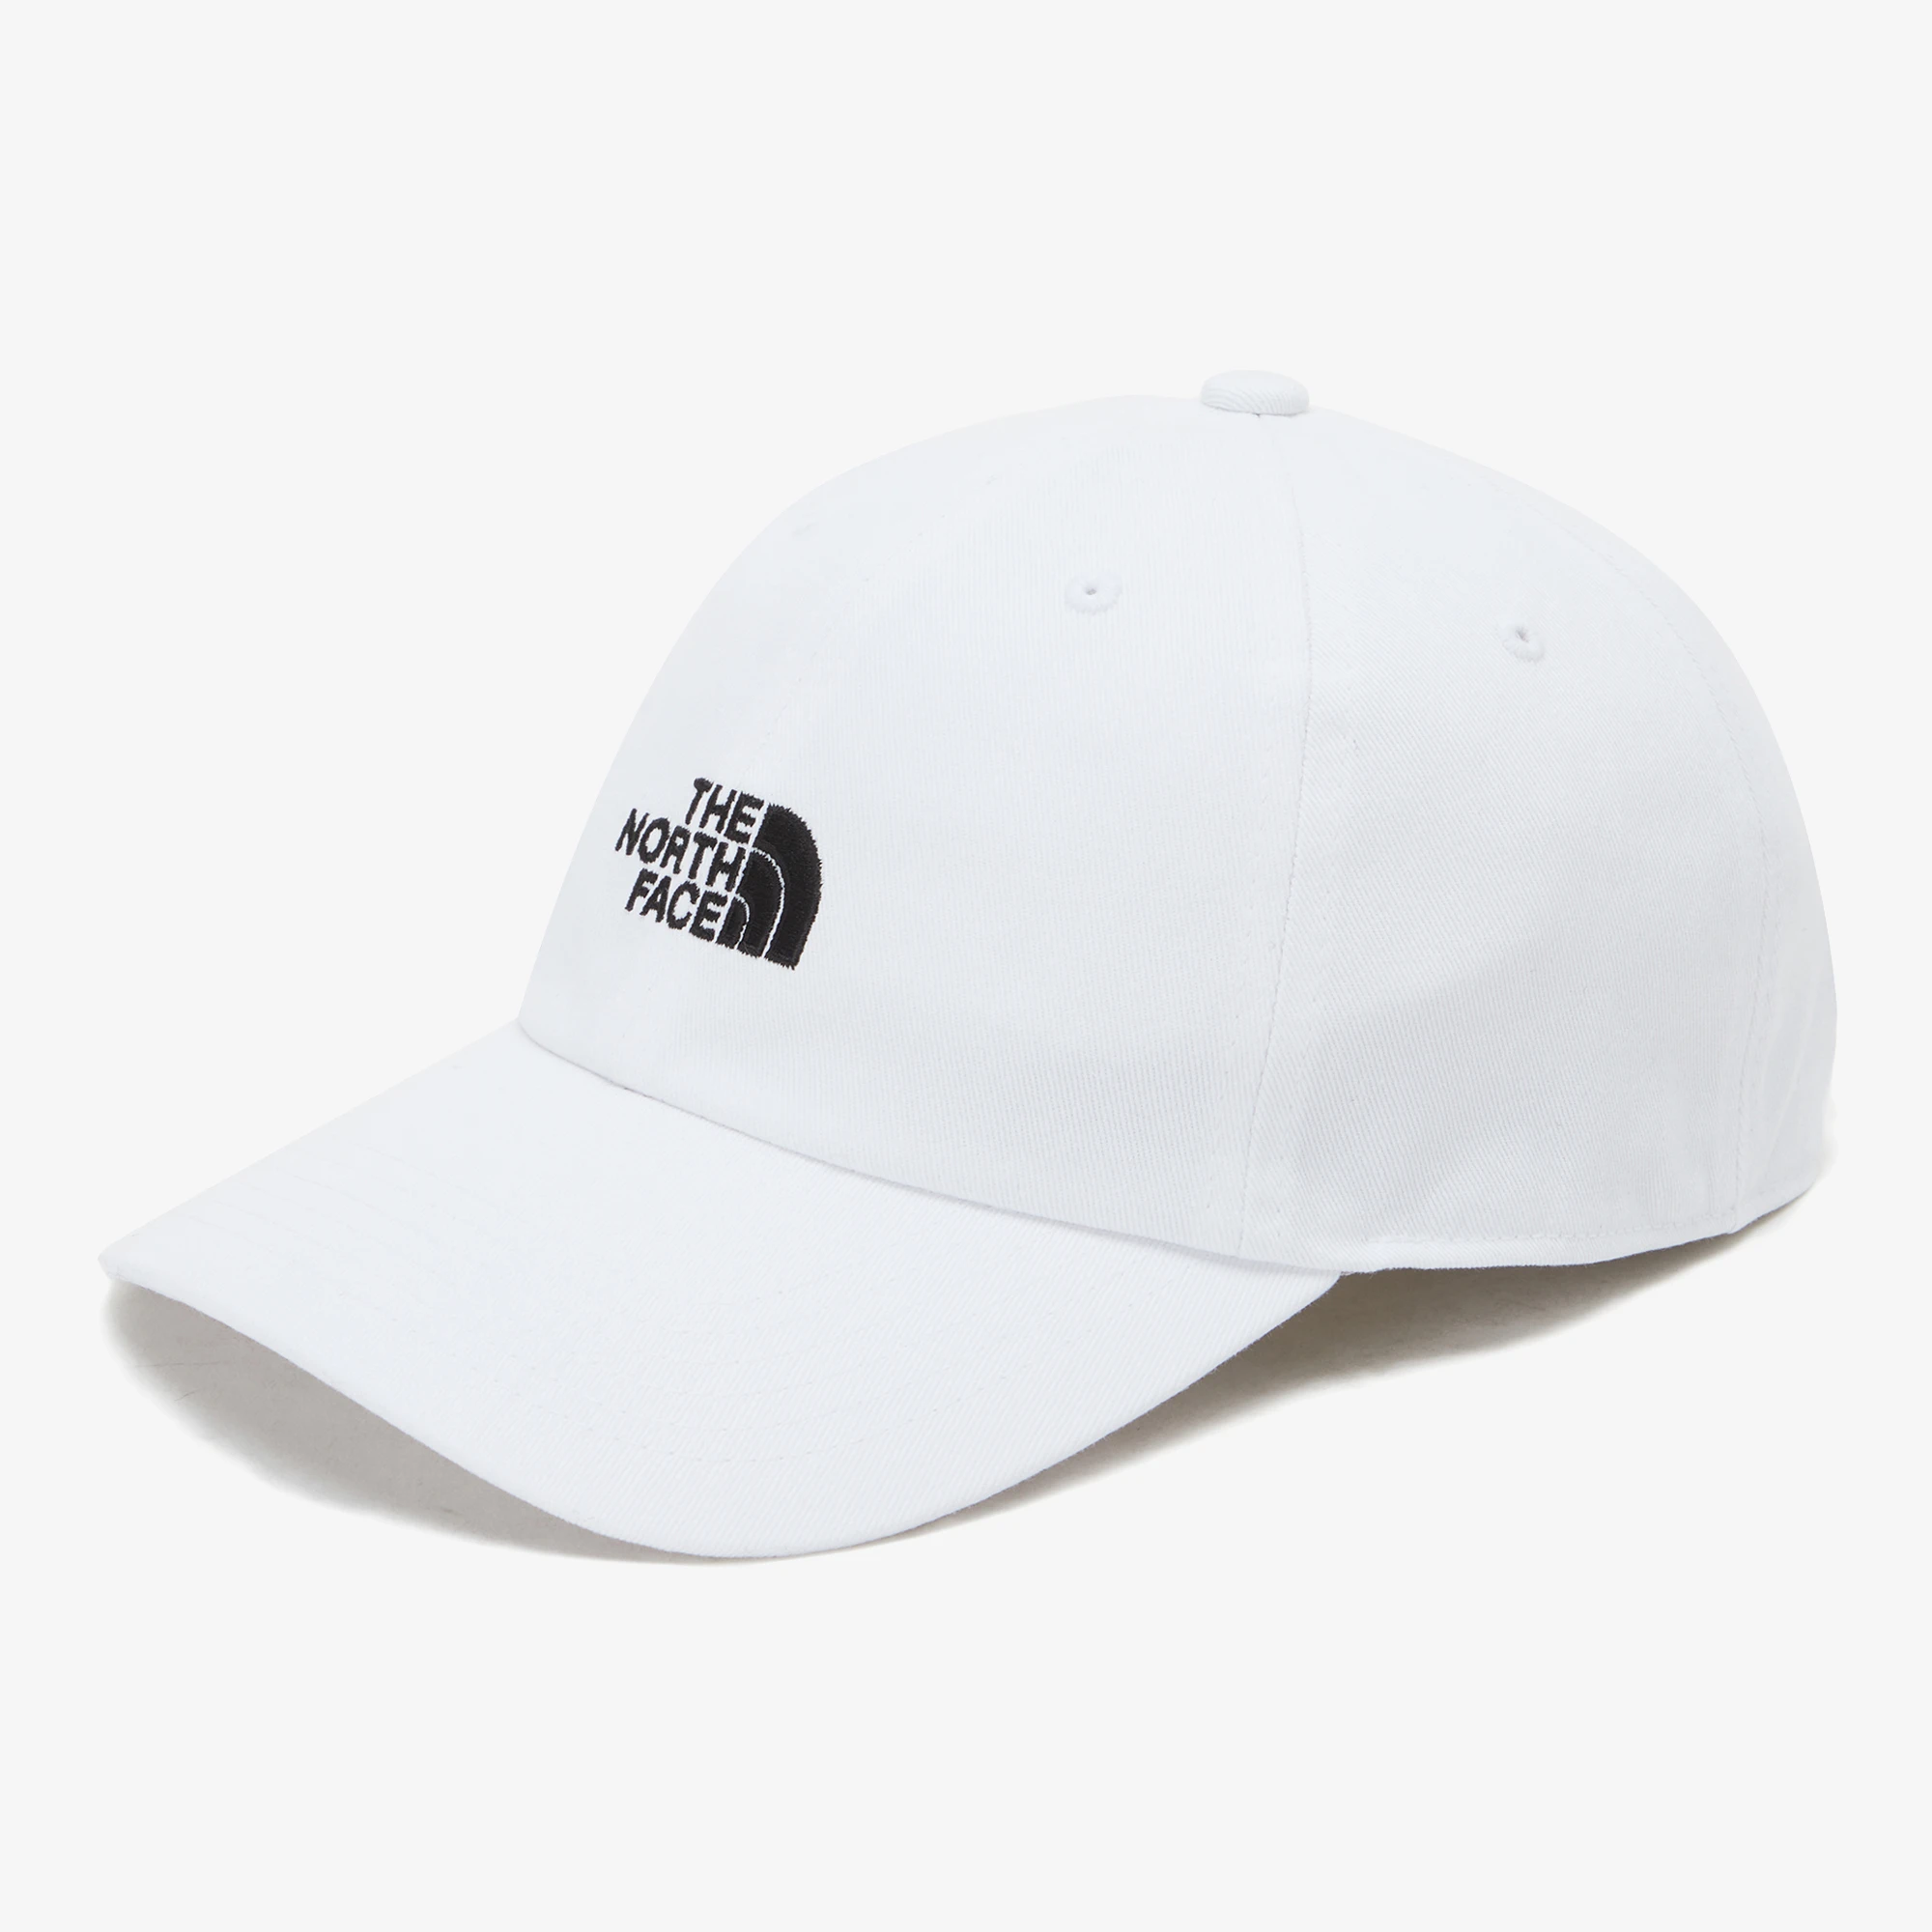 推荐【Brilliant|北面特惠】北面棉质球帽 COTTON BALL CAP WHITE NE3CP03K商品